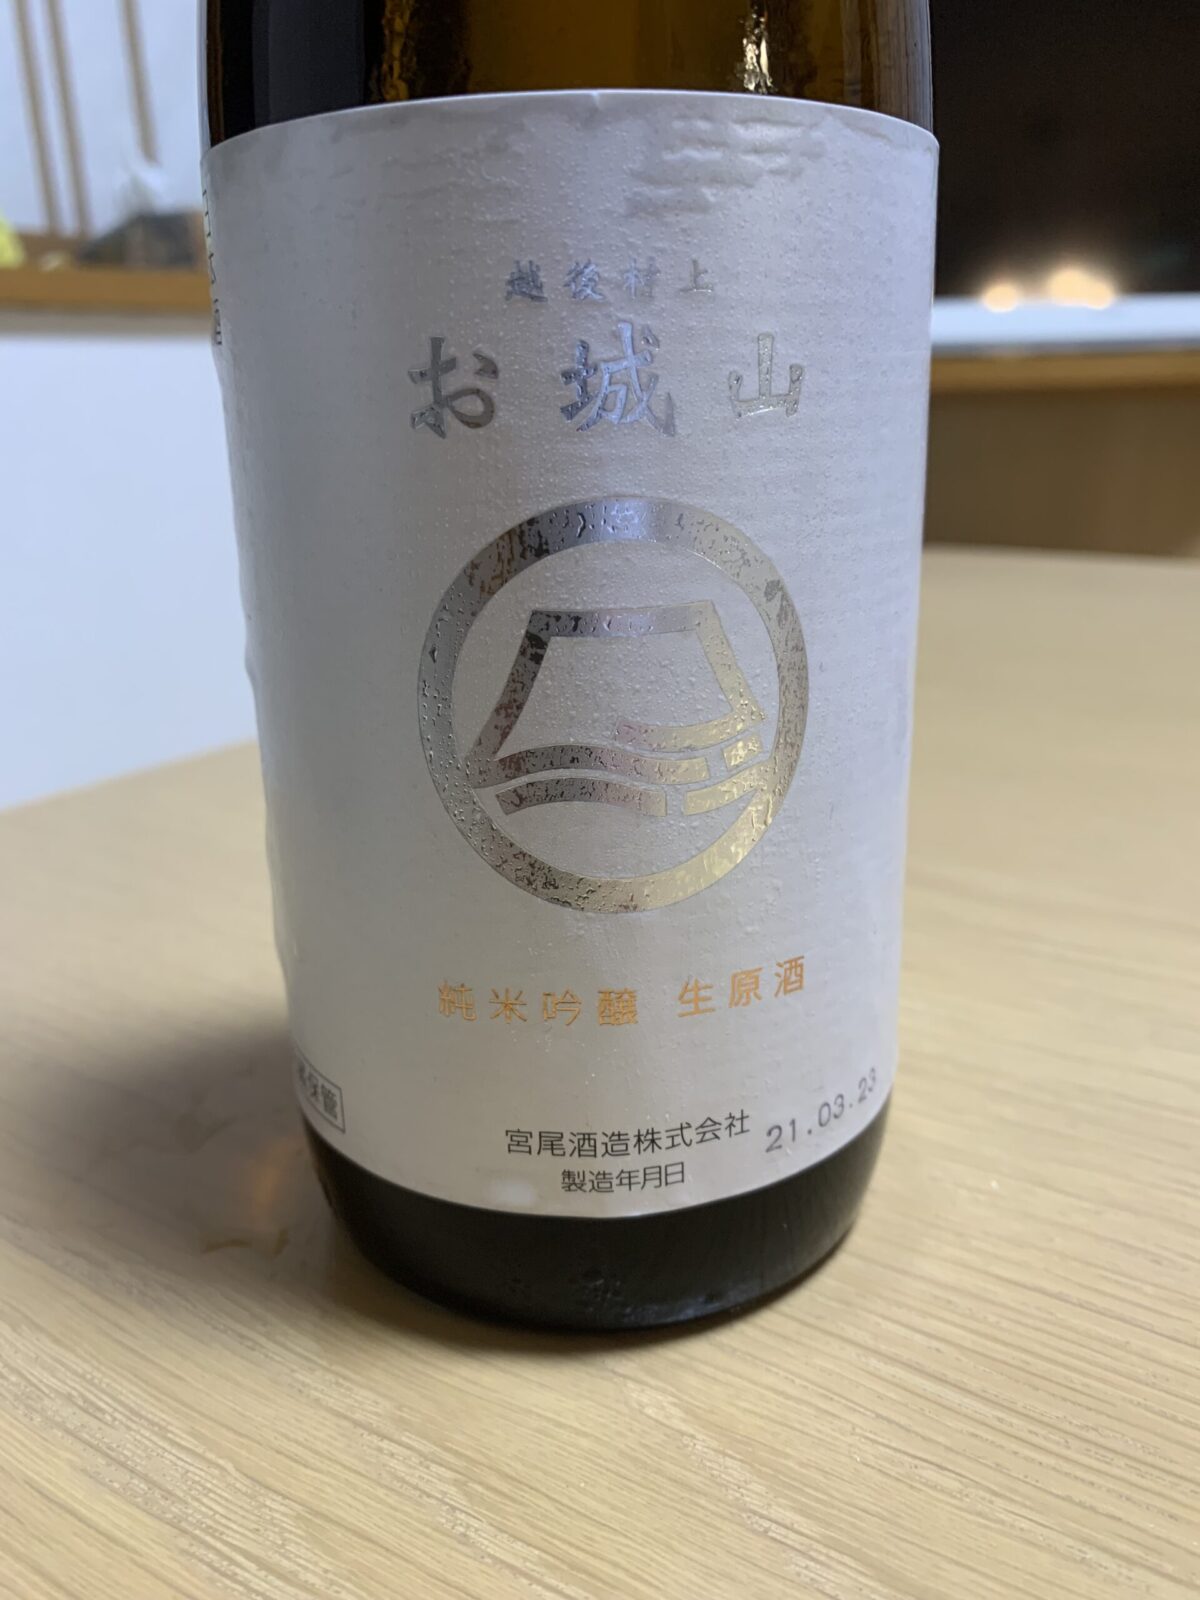 新潟の日本酒『お城山』はクラッシックな深みのある味わい